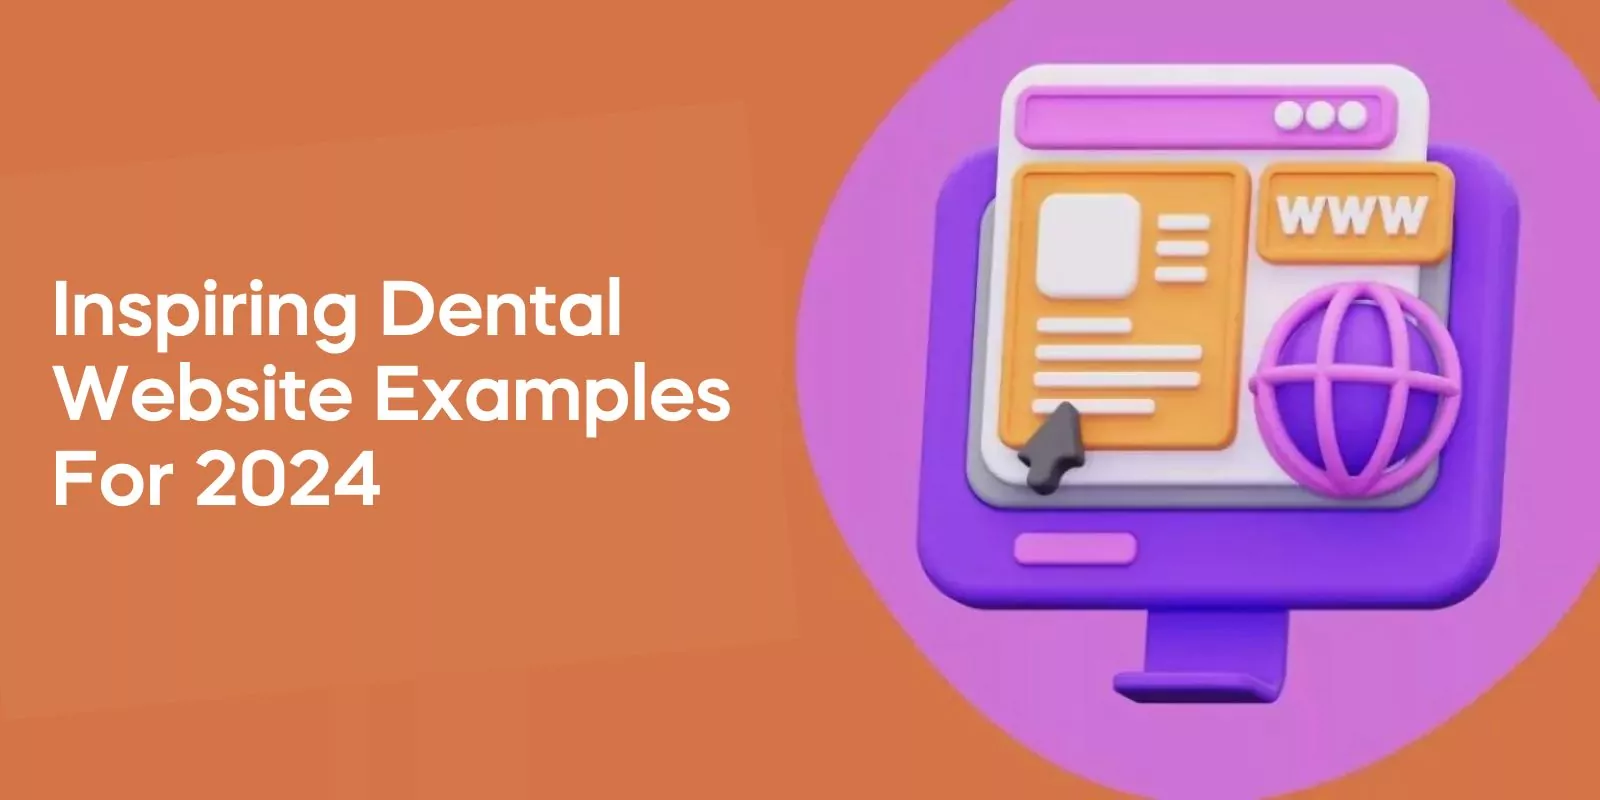 Inspiring Dental Website Examples for 2024